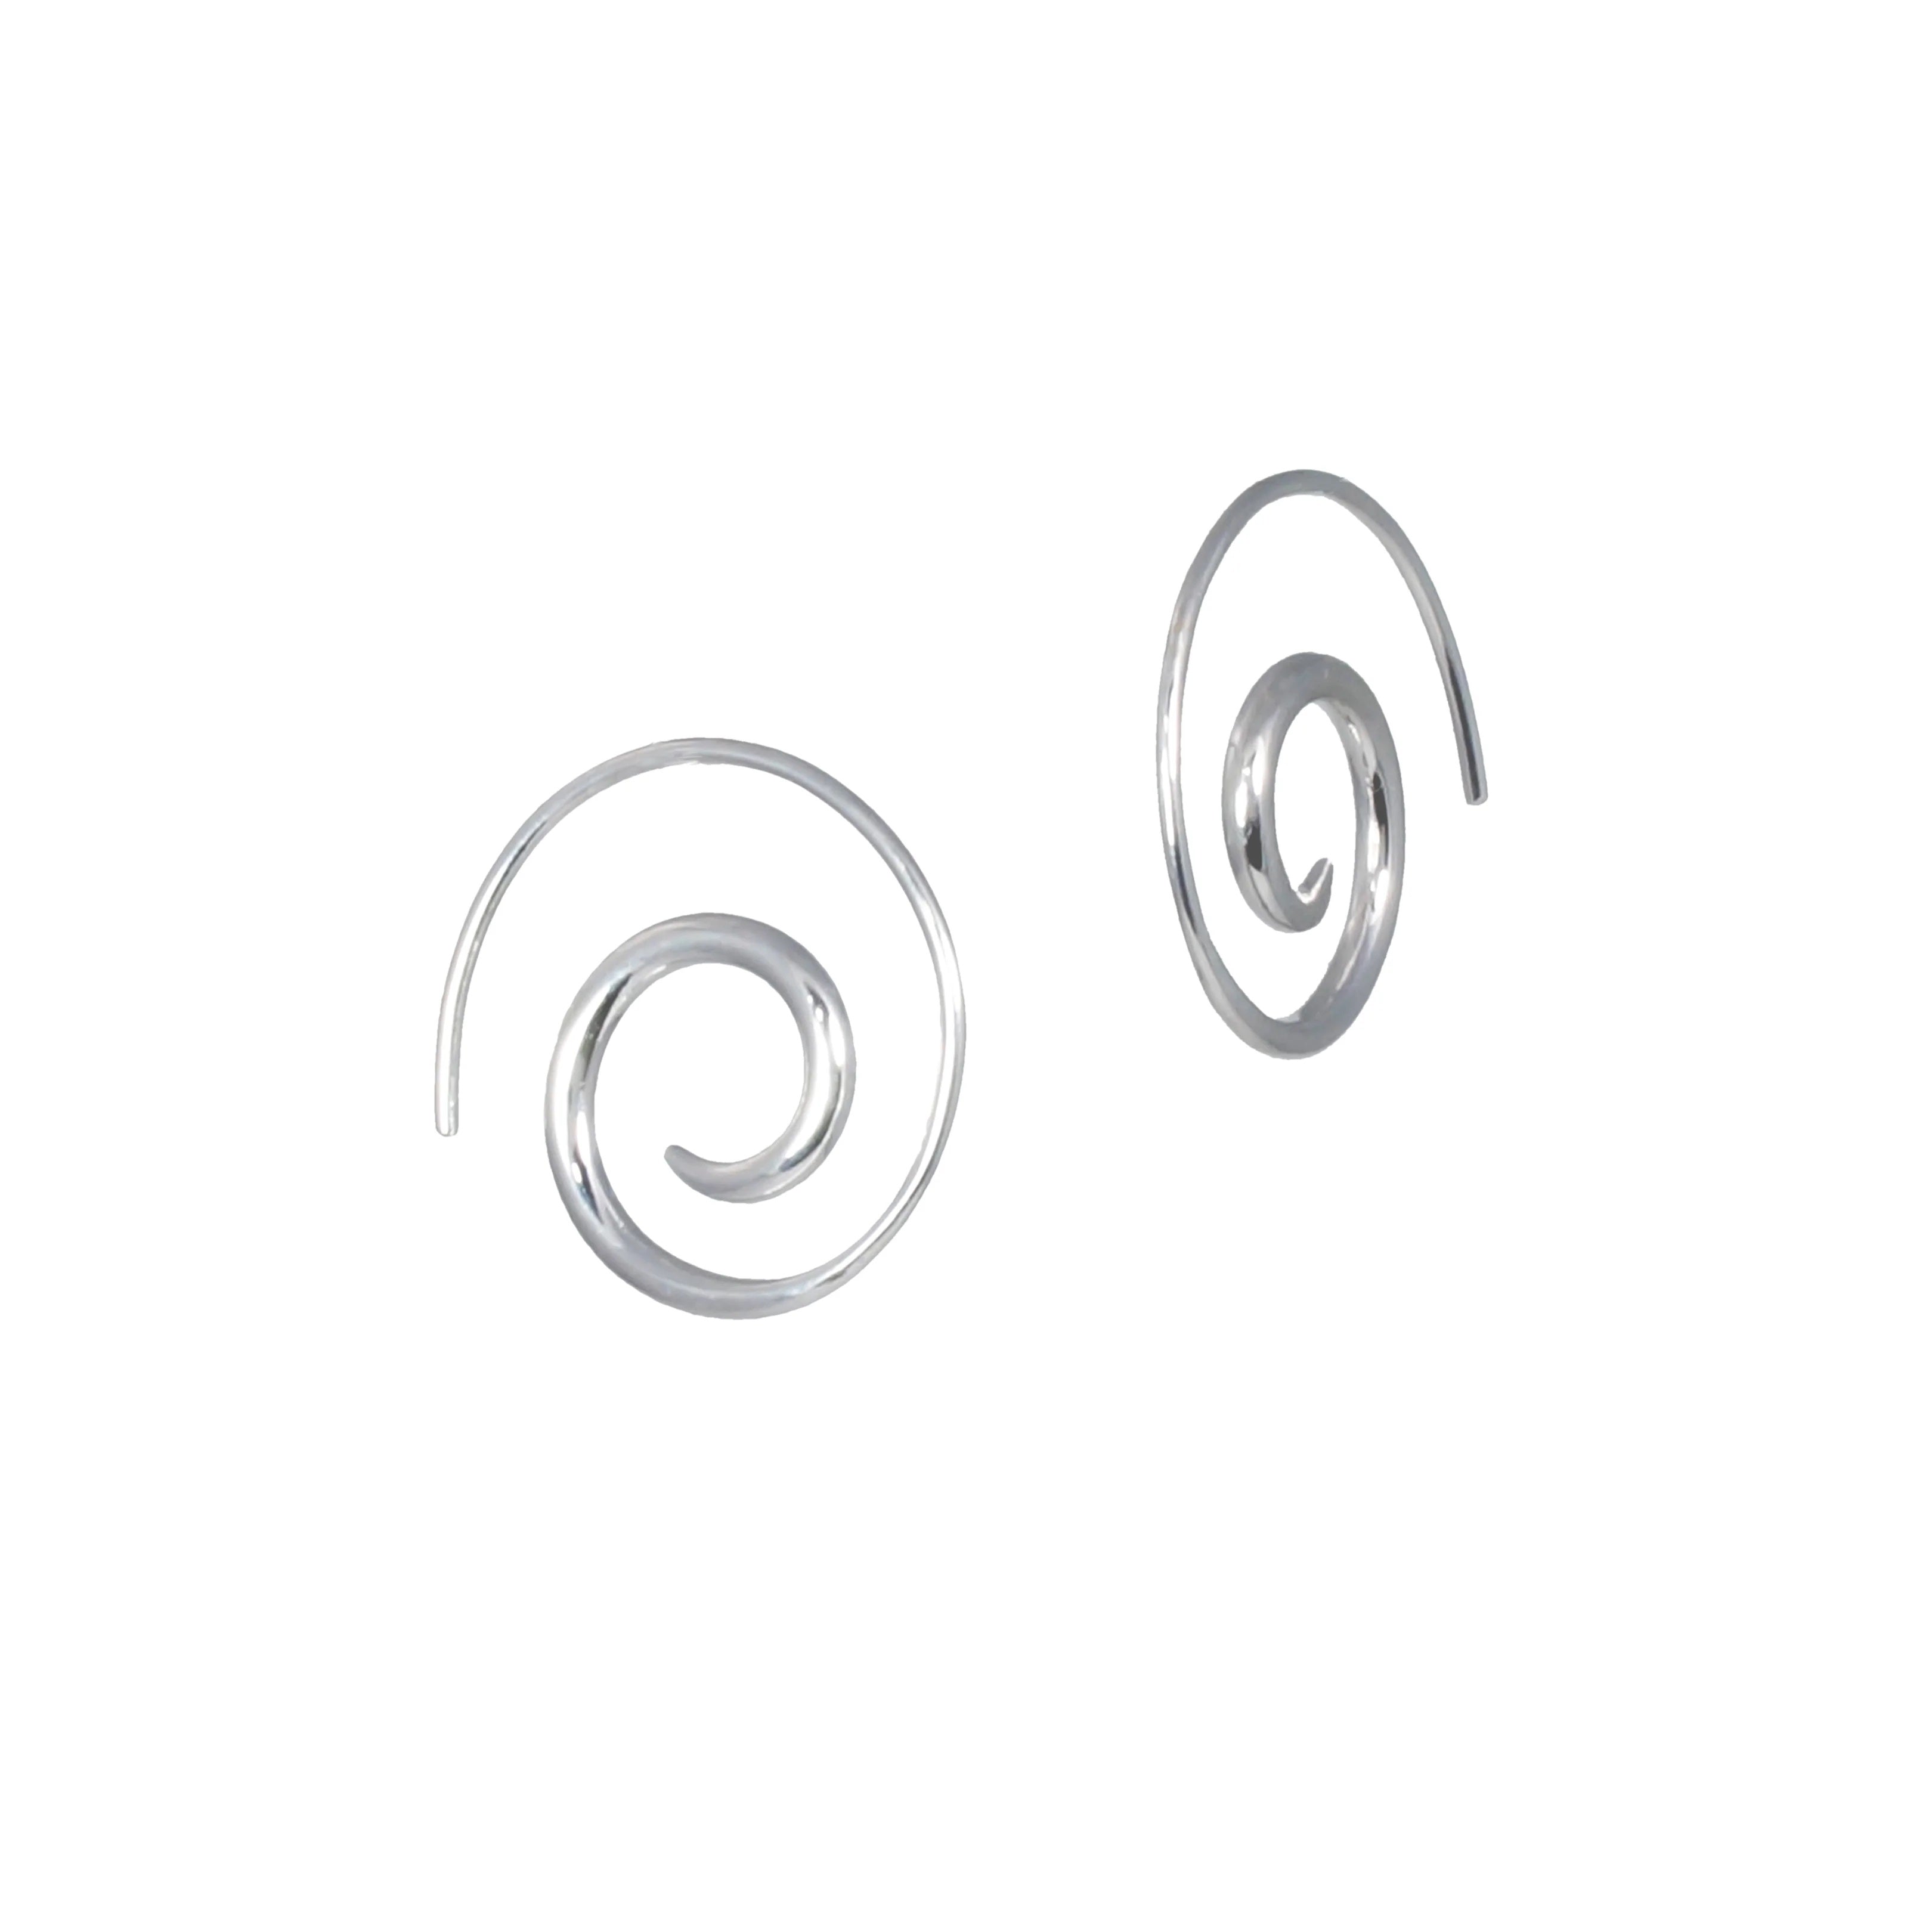 Swirl Hoops in Sterling Silver - Small